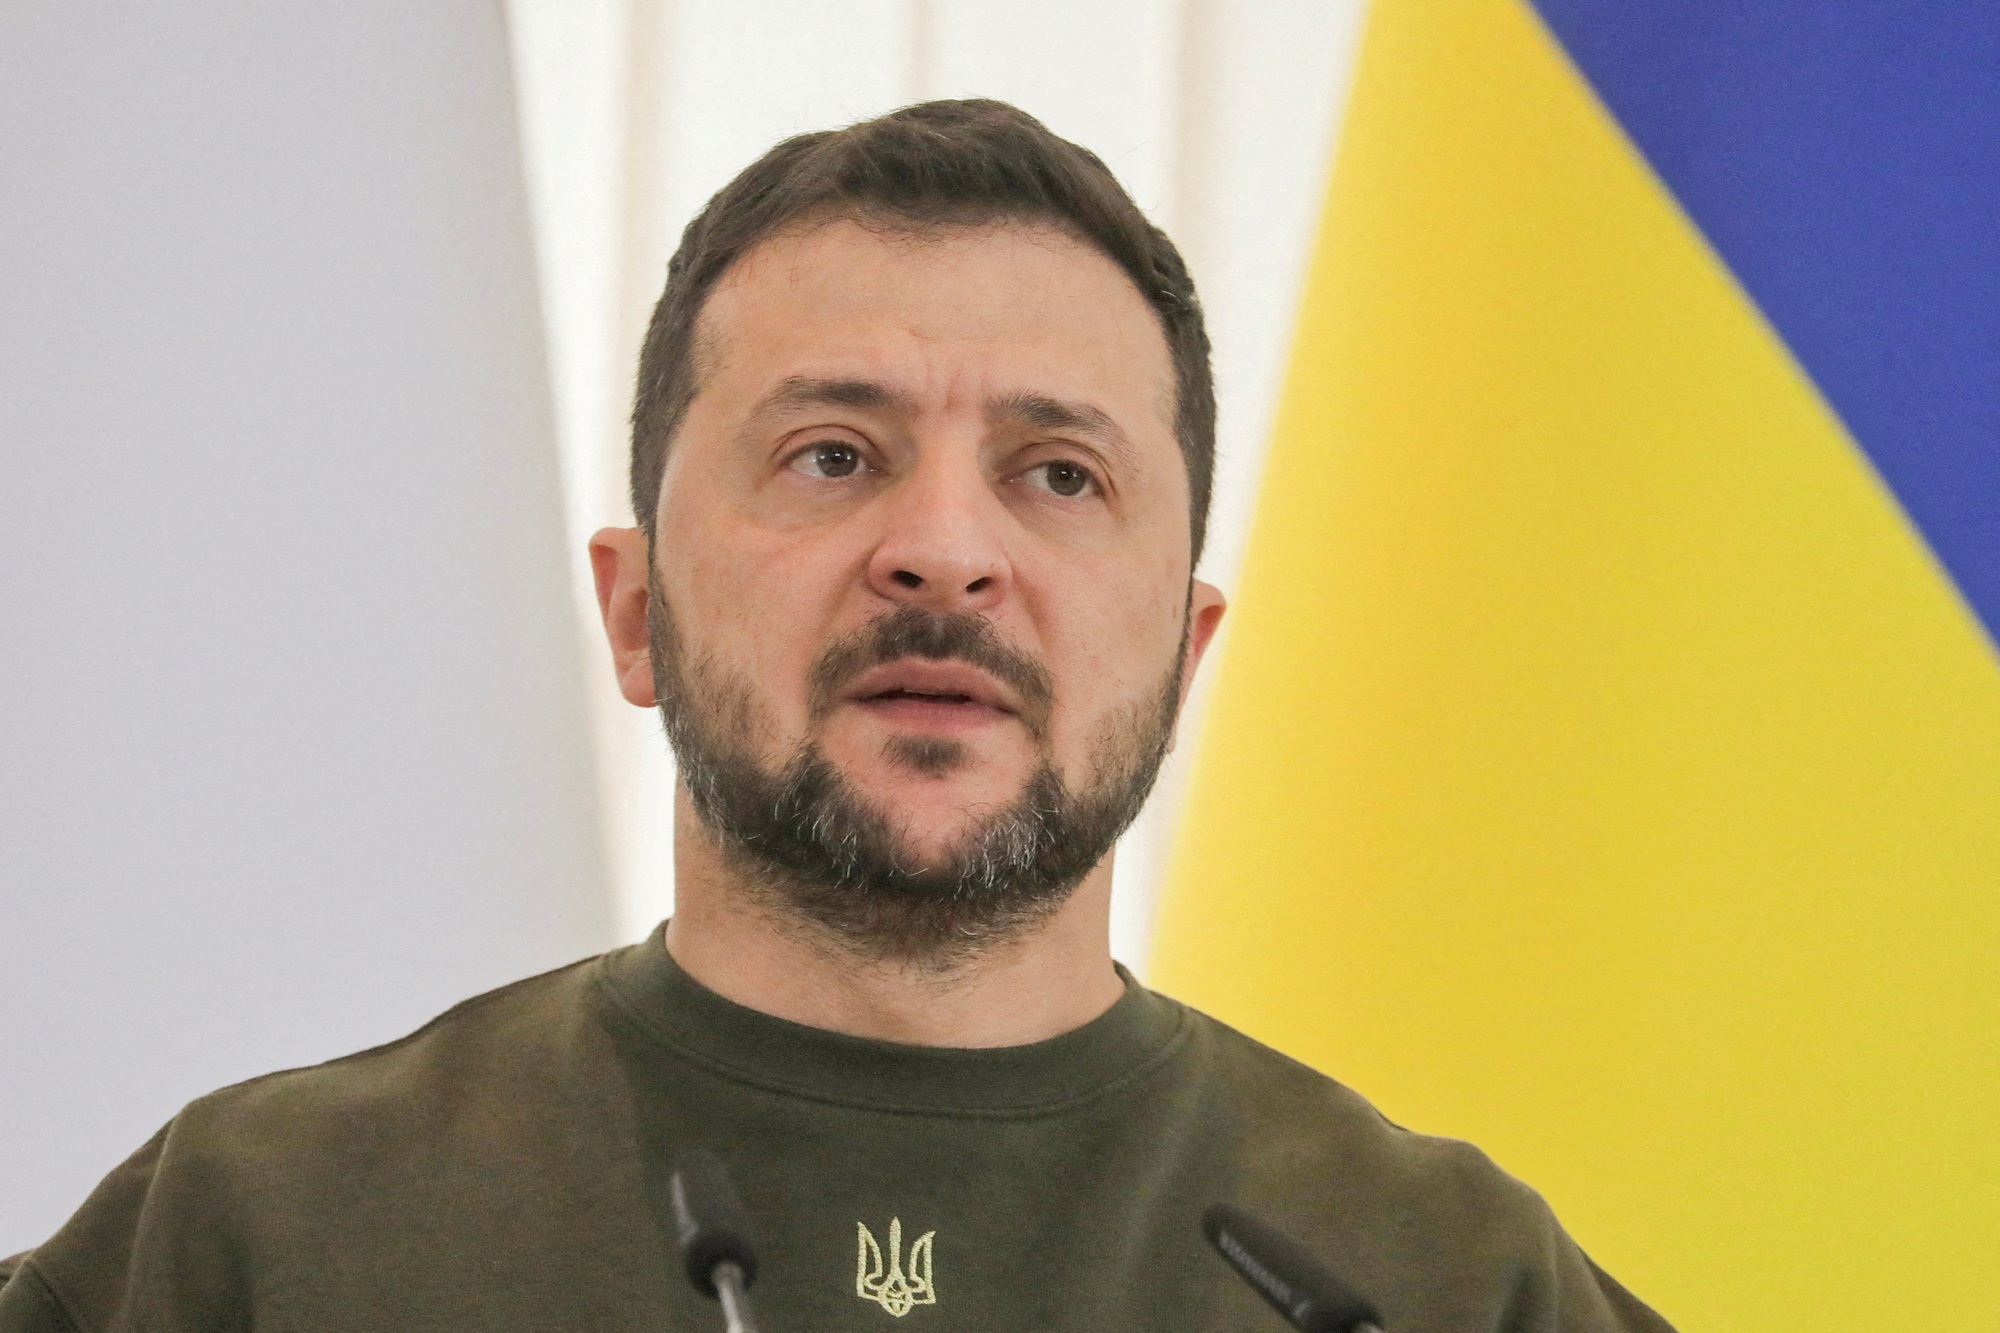 Tổng thống Ukraine khuyên chỉ huy quân đội không can thiệp vào chính trị - Ảnh 1.